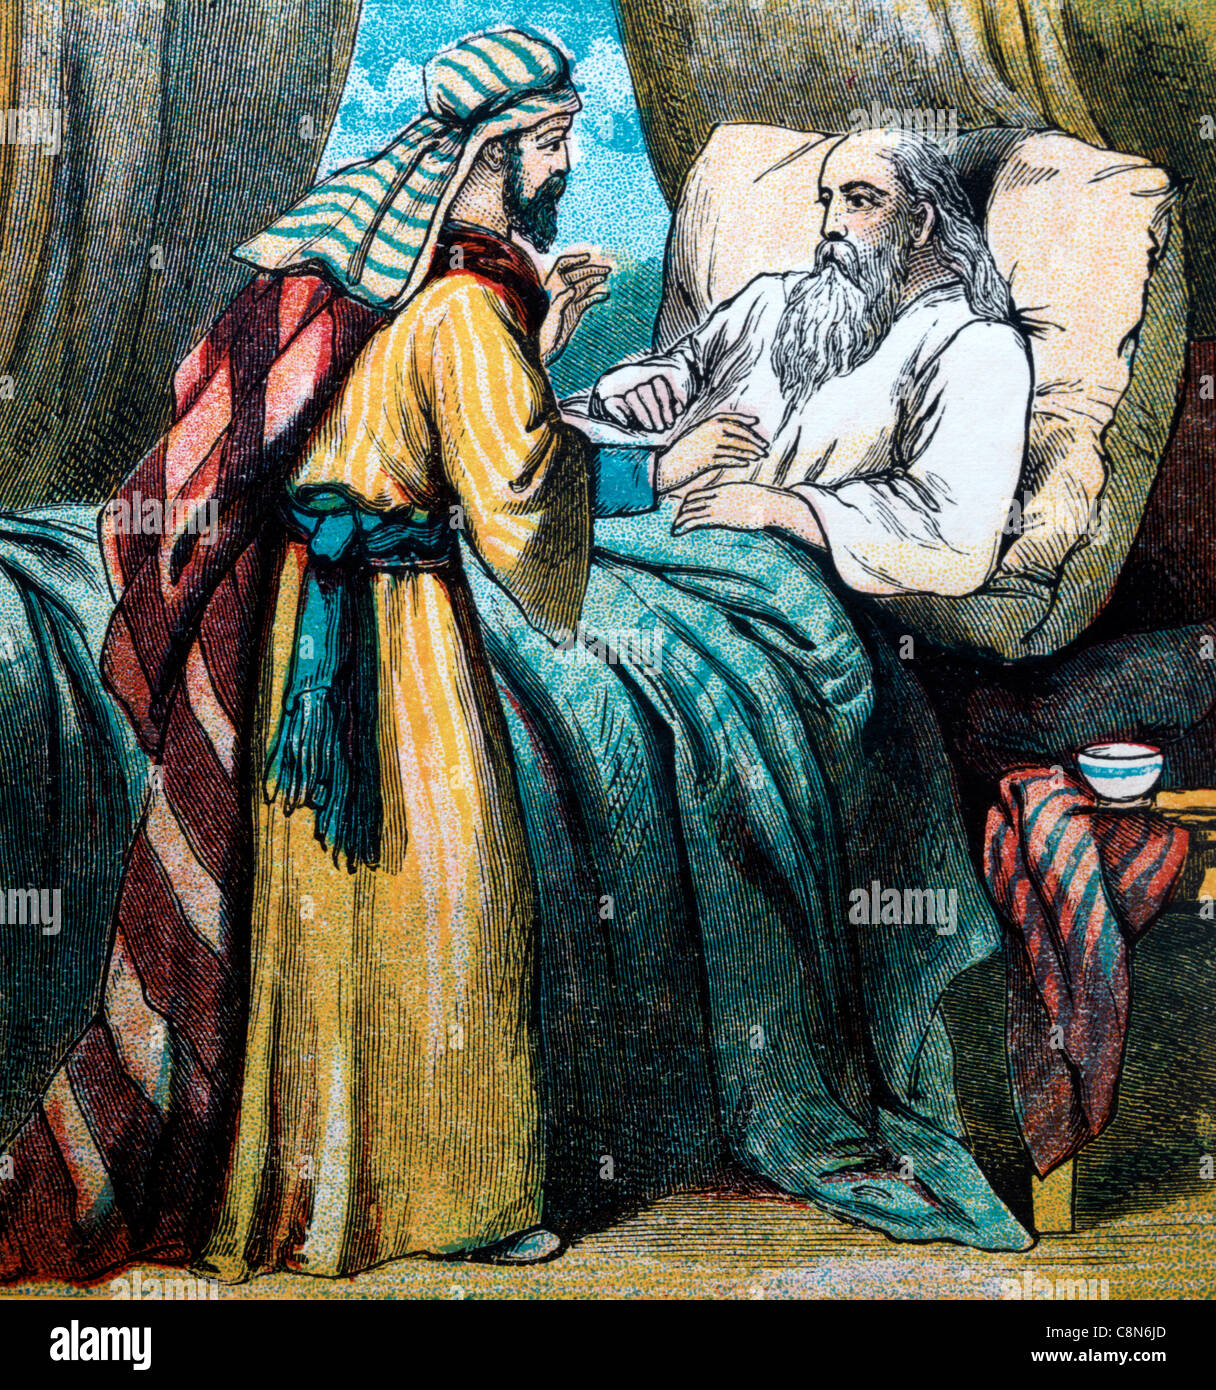 Histoires de la Bible- Illustration d'Ésaü revenir à Isaac après la chasse pour trouver Jacob avait trompé son père Banque D'Images